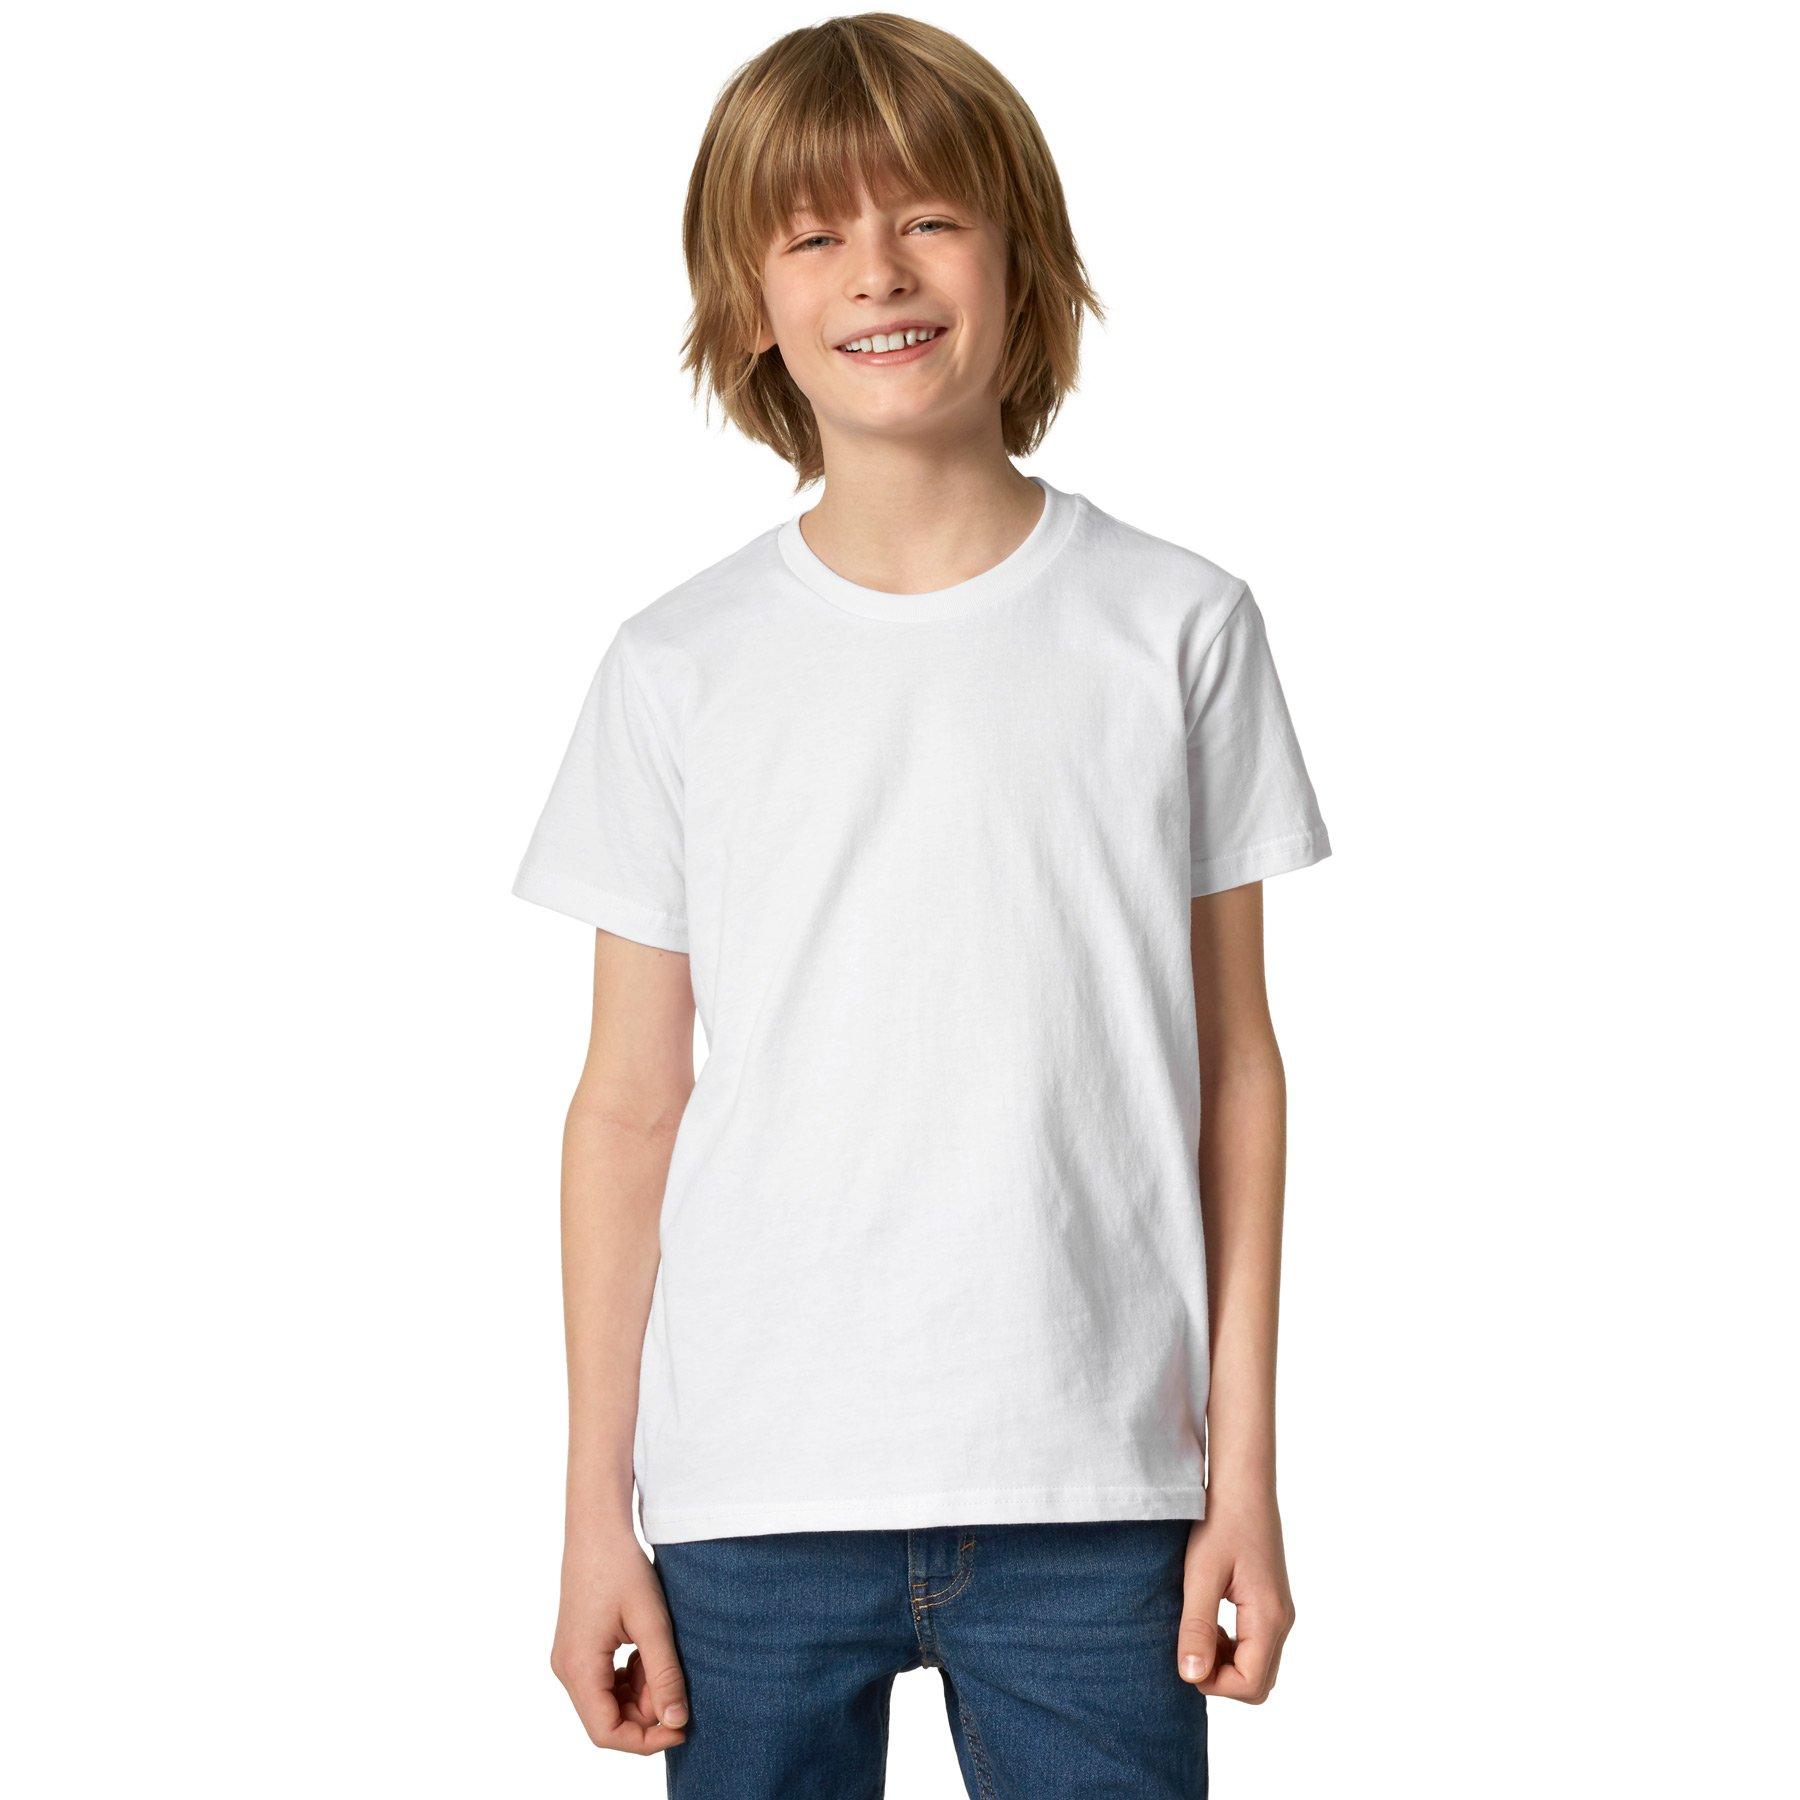 T-shirt Kinder Jungen Weiss 116 von Tectake